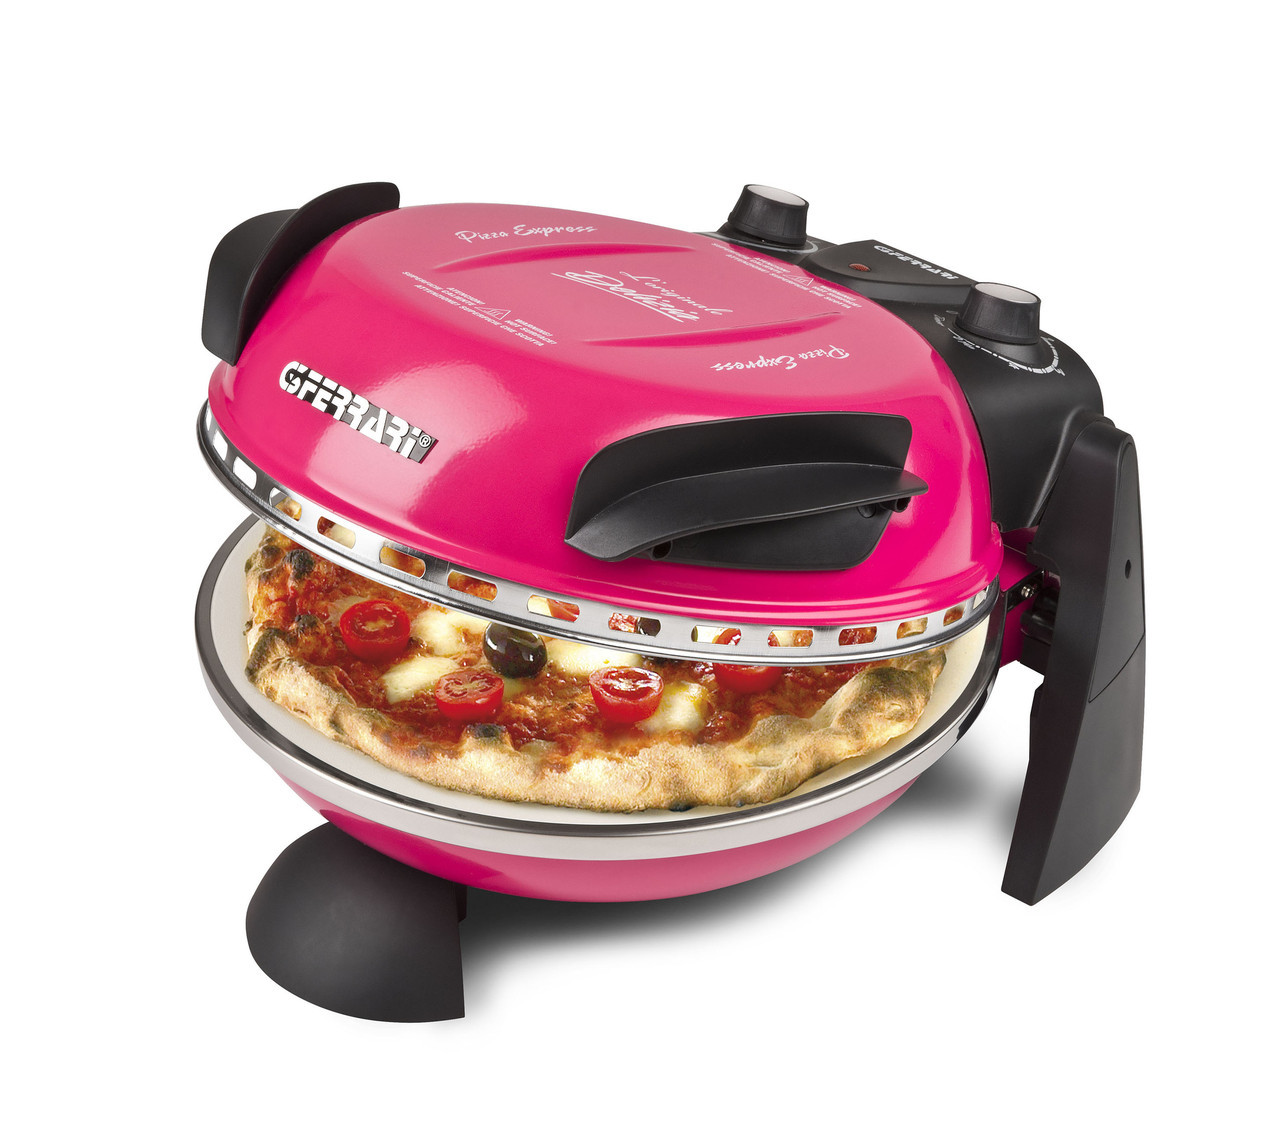 Пиццамейкер G3 ferrari Delizia G10006 бытовая домашняя мини печь для выпекания пиццы, розовый